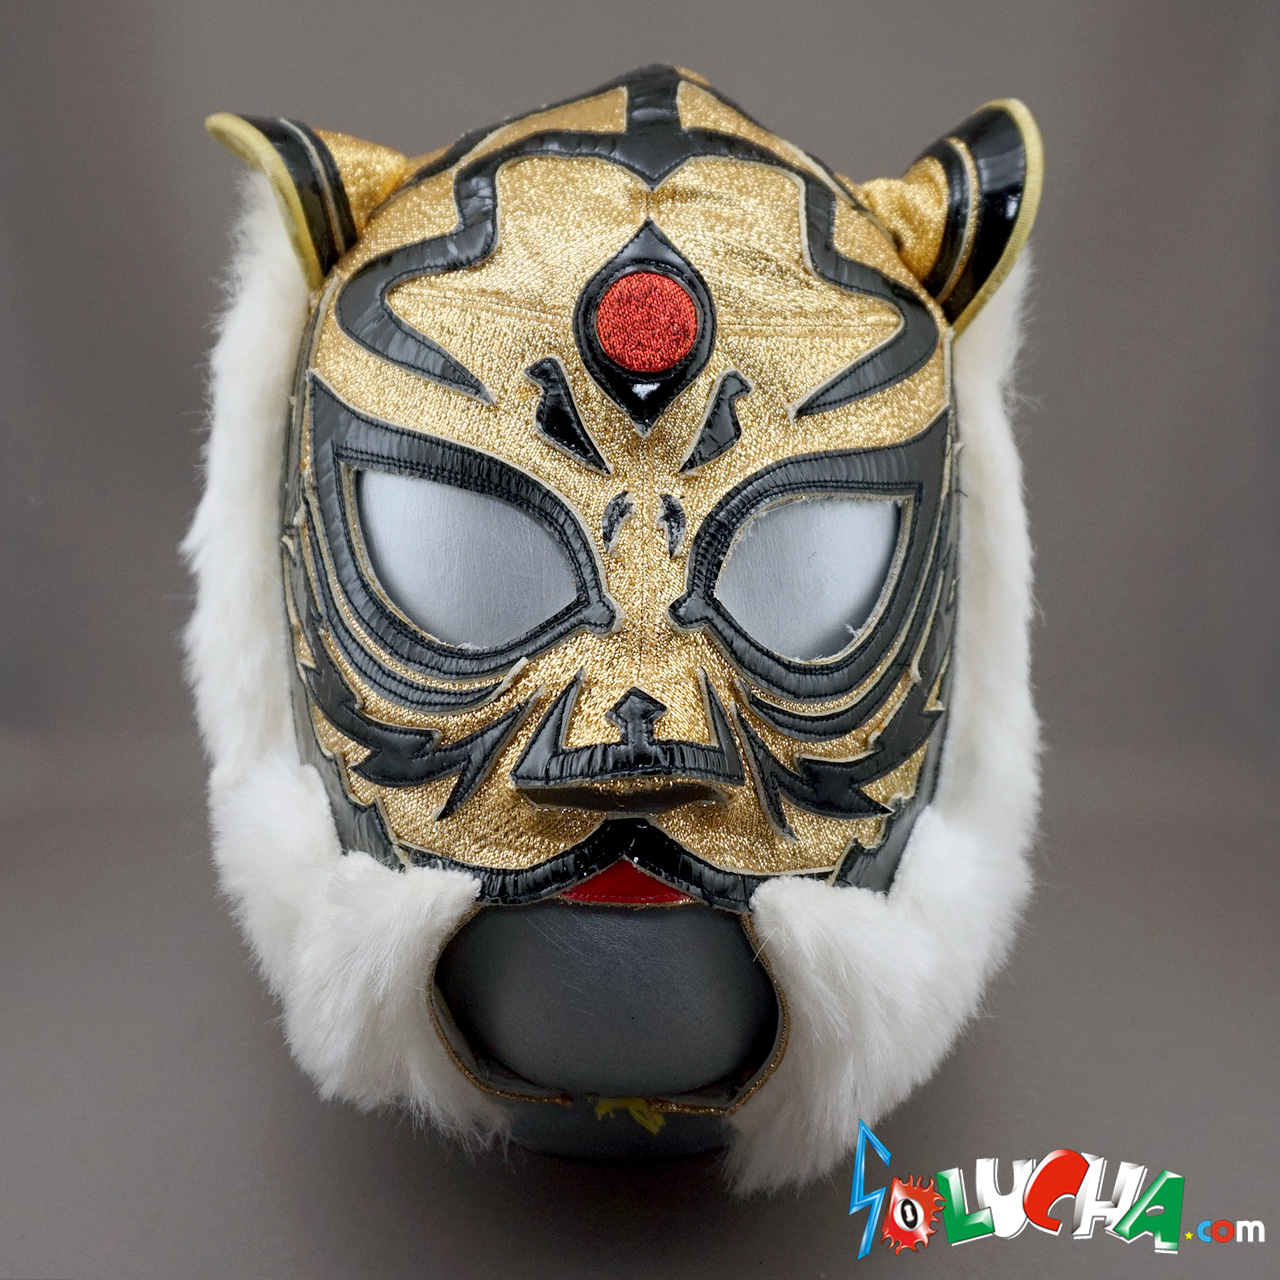 ビンテージ年代物》2代目タイガーマスク実使用マスク - SOLUCHA.com ...